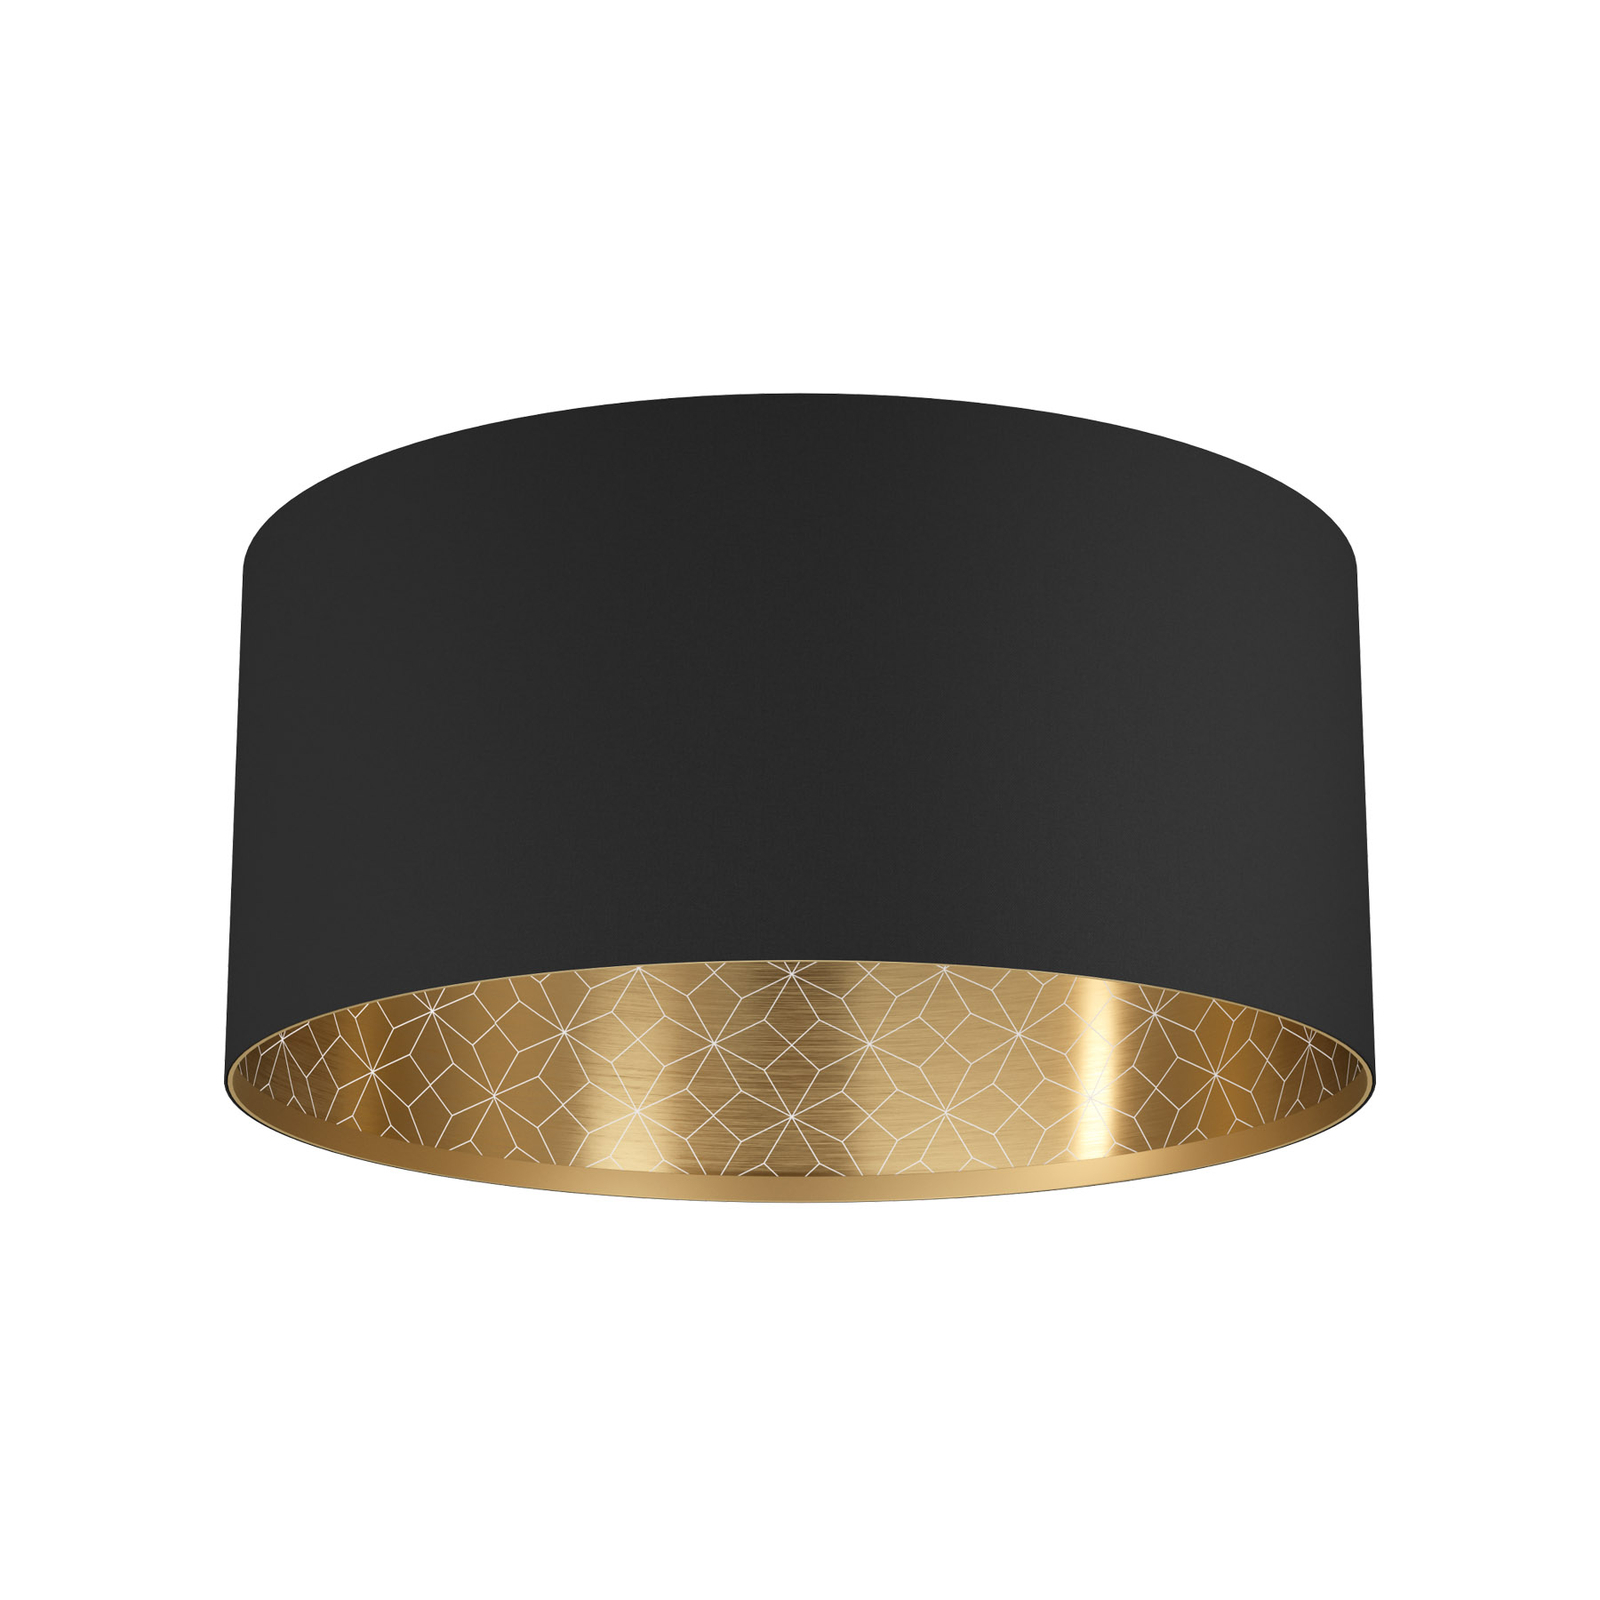 Lampa sufitowa Zaragoza, czarna/złota, Ø 47,5 cm